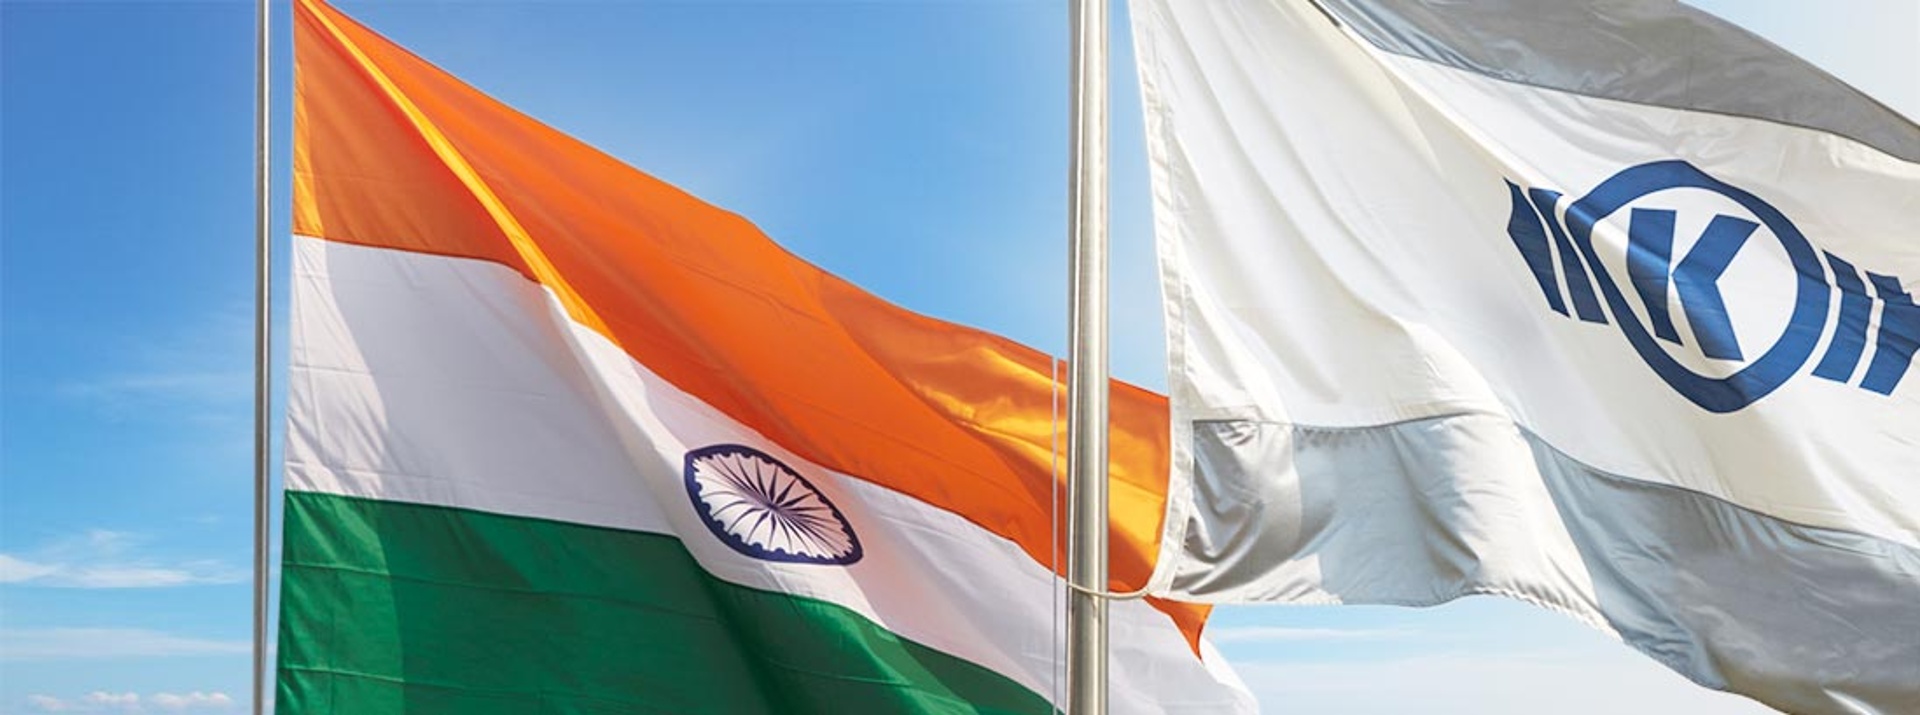 Zwei Fahnen am Mast vor blauem Himmel - links eine mit der indischen Flagge und rechts eine mit dem Knorr-Bremse Logo.